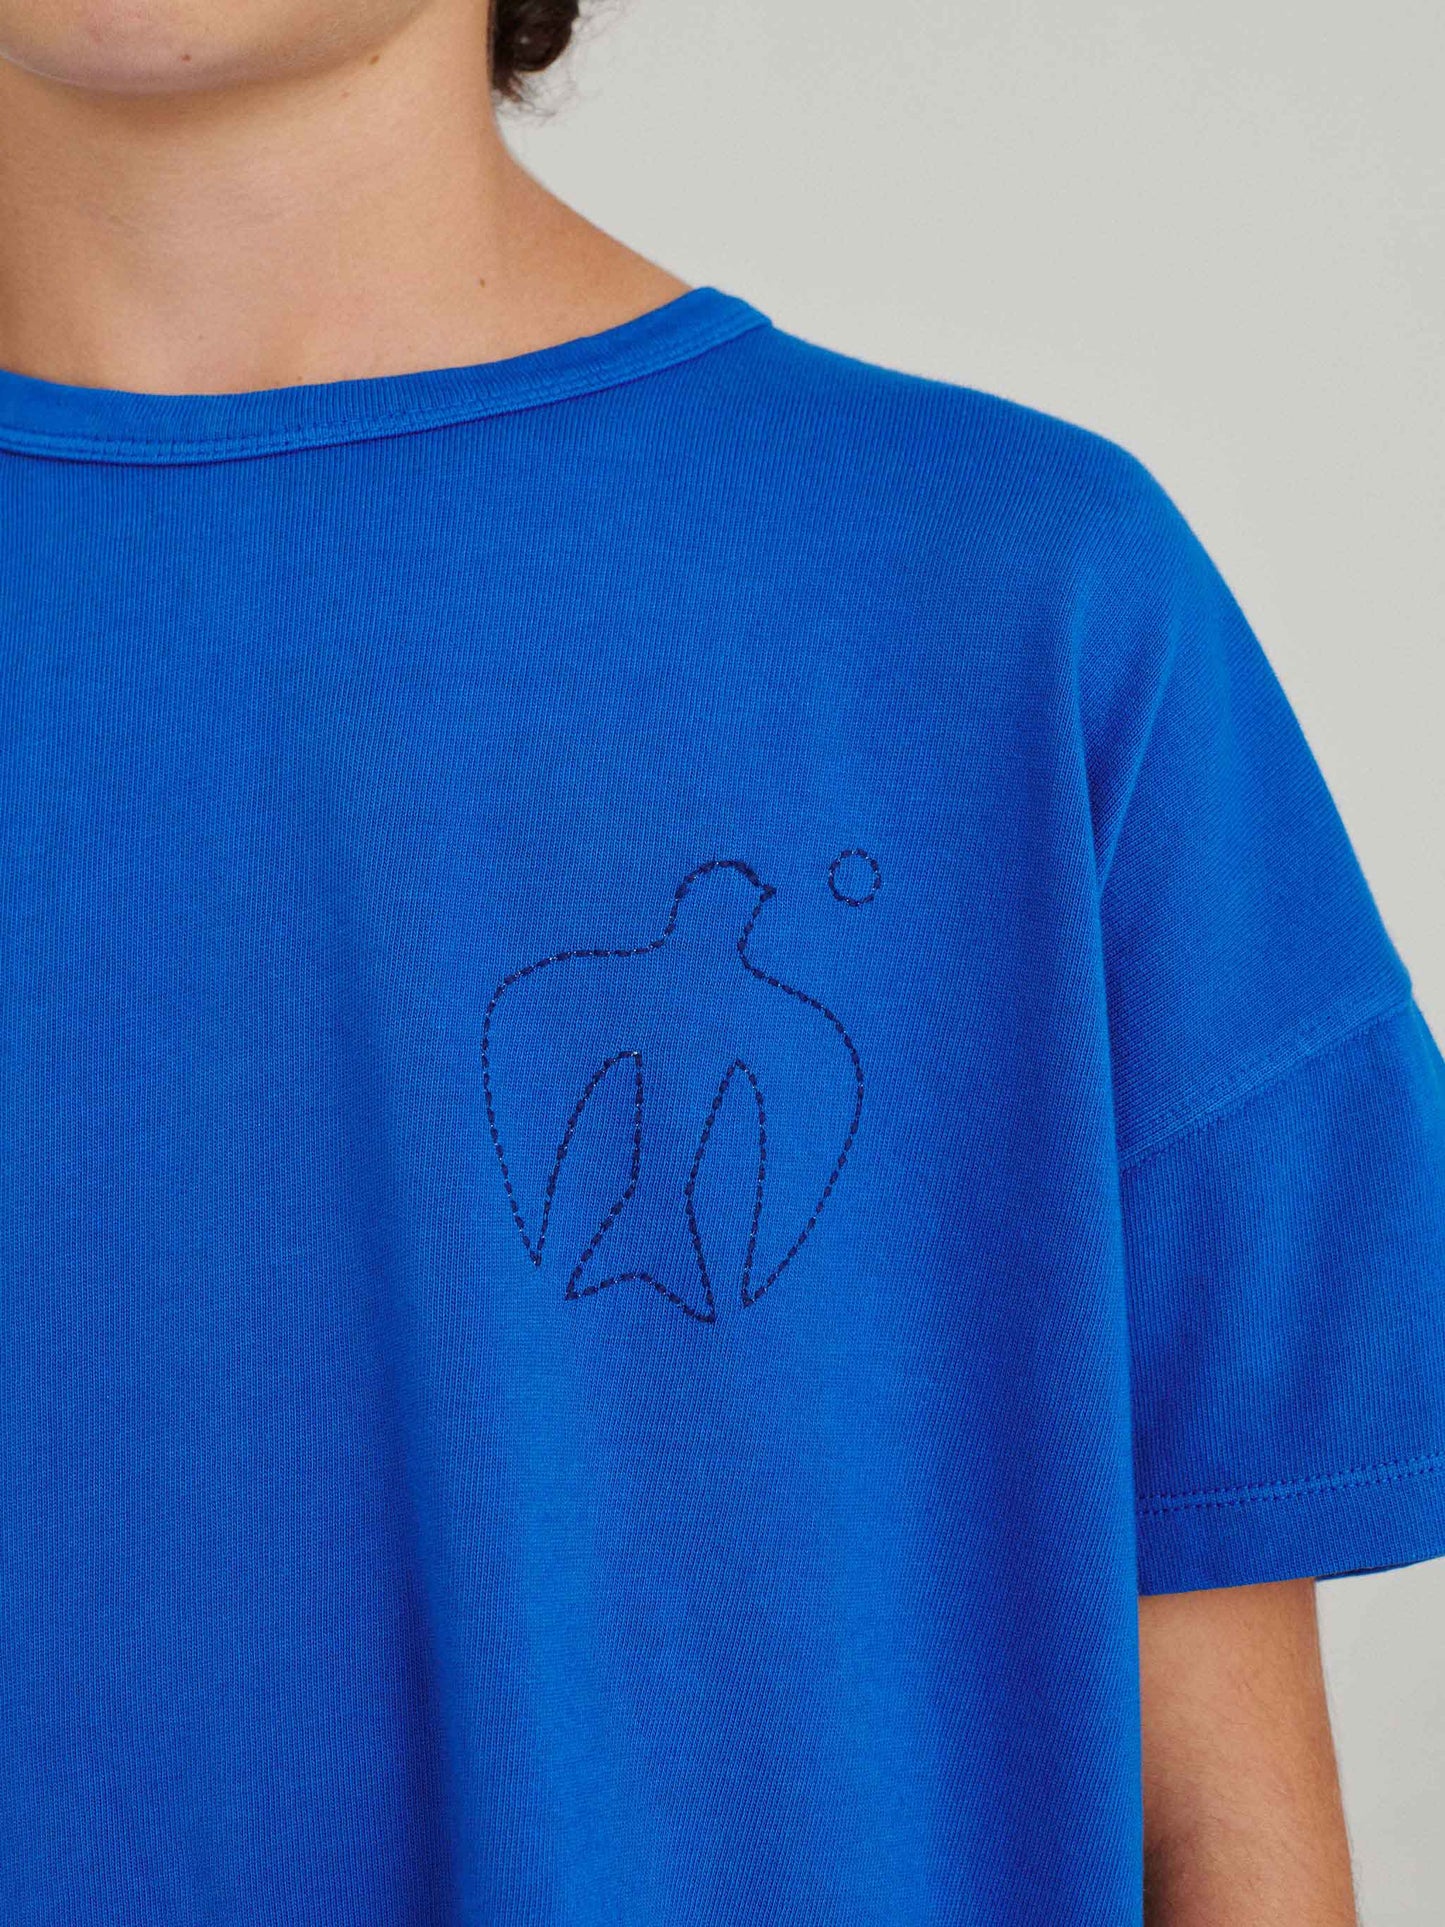 T-shirt nº01 Sapphire Blue